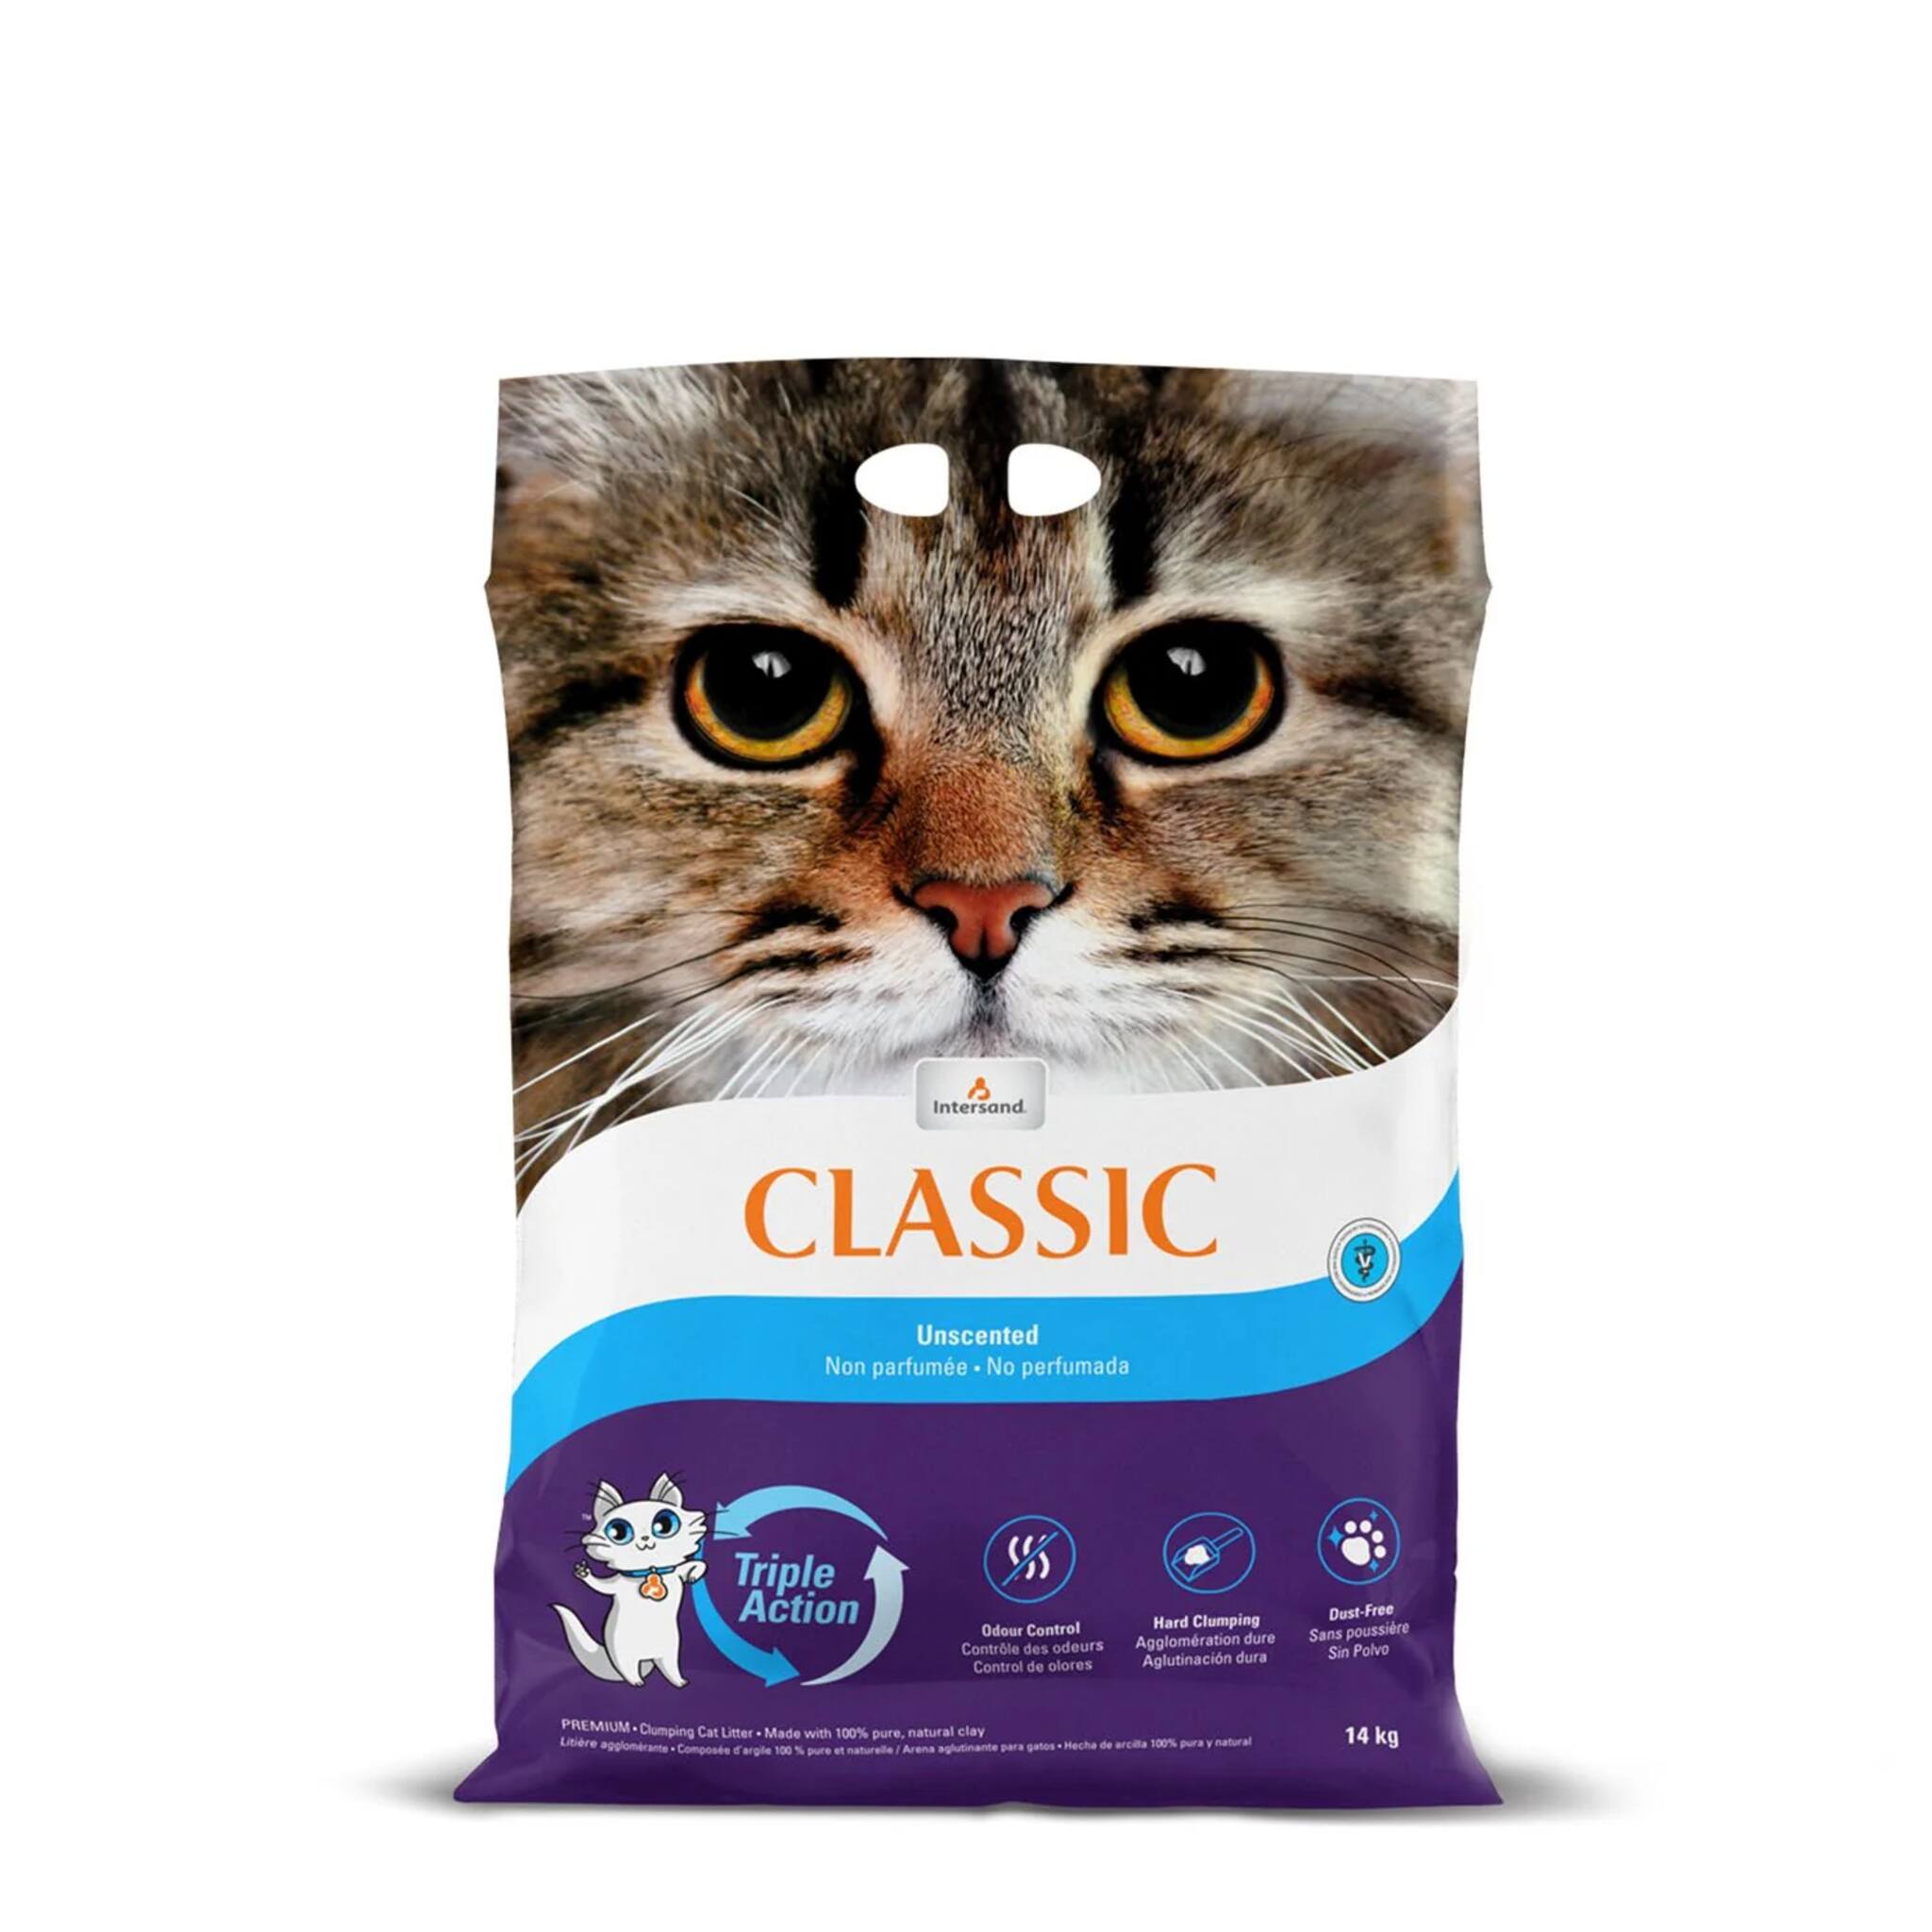 Intersand Classic Unscented Cat Litter 14 kgs